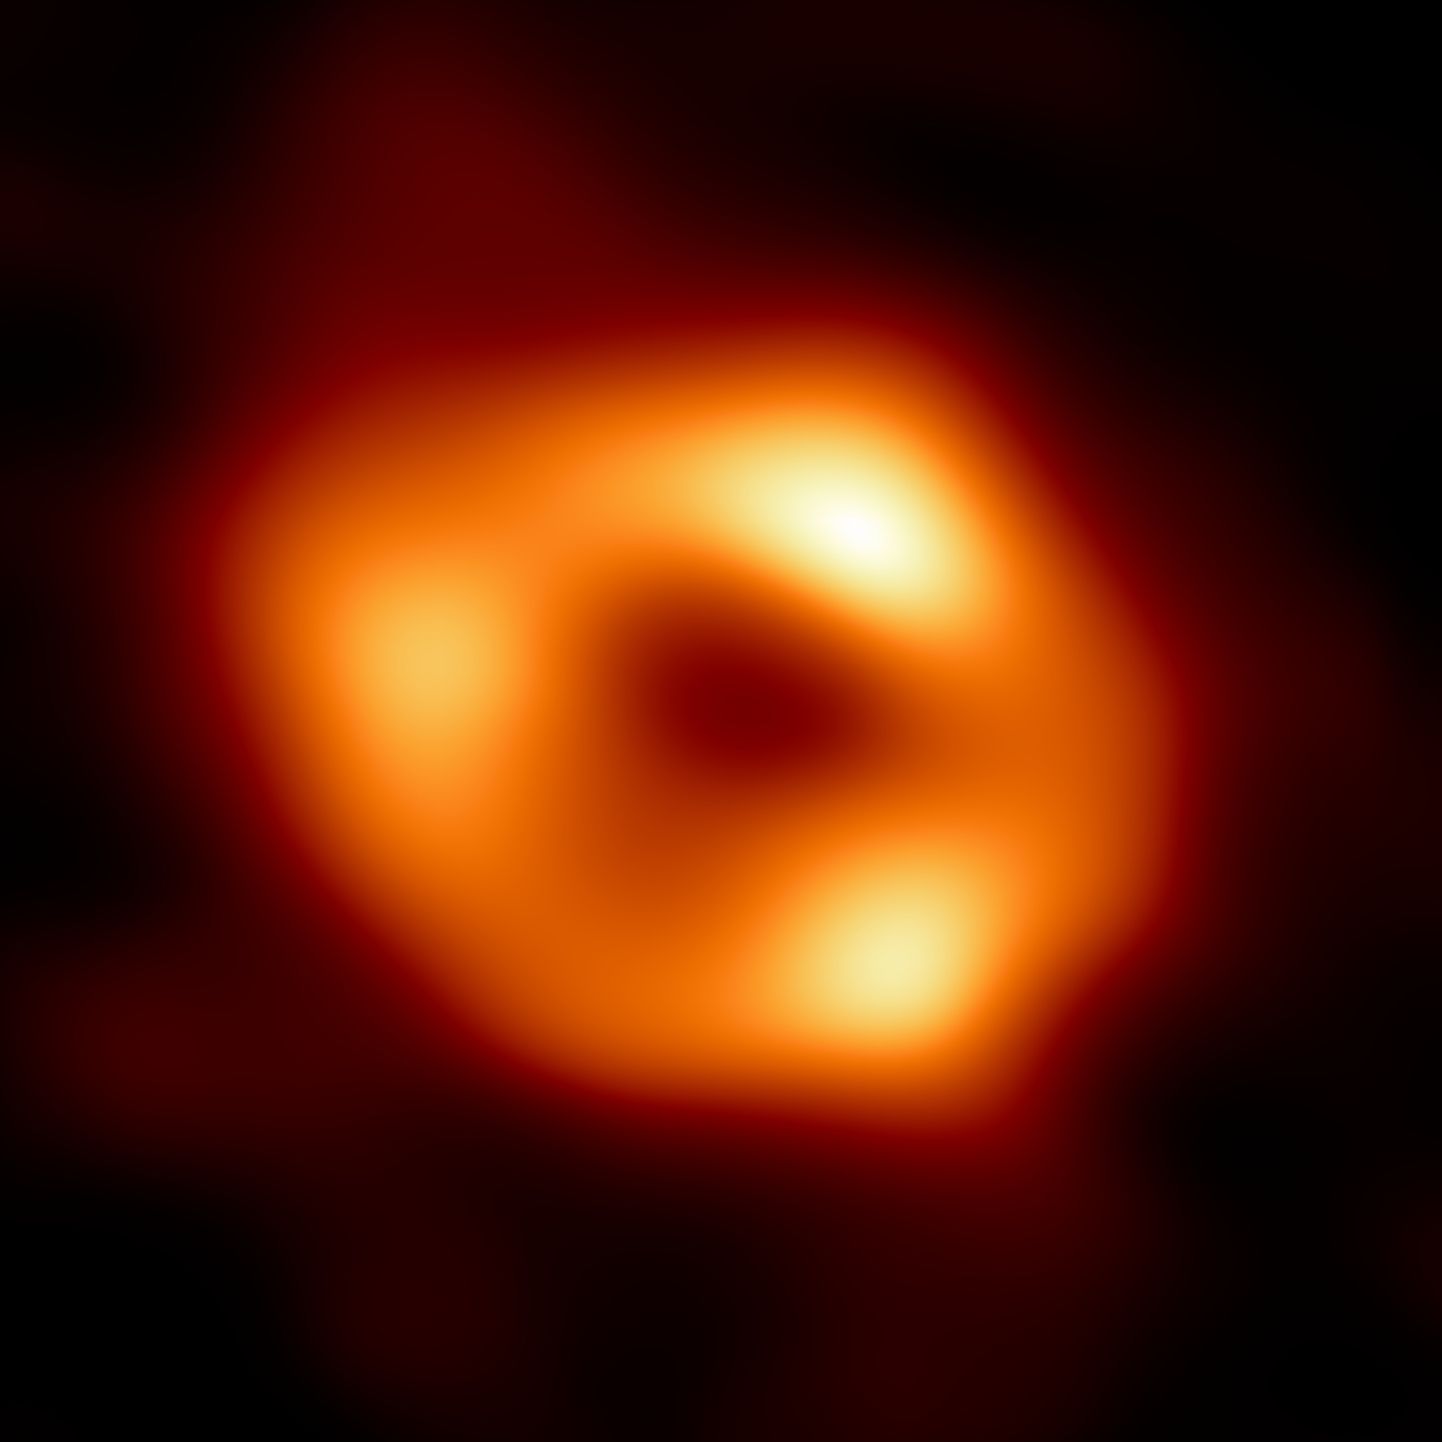 Supermassivse ja Linnutee keskmes asetseva Sagittarius A nimelise musta augu poolt mõjutatud ning Maal paiknevate raadieteleskoopide võrgu (EHT) signaalidest «ilmutatud» kujutis.